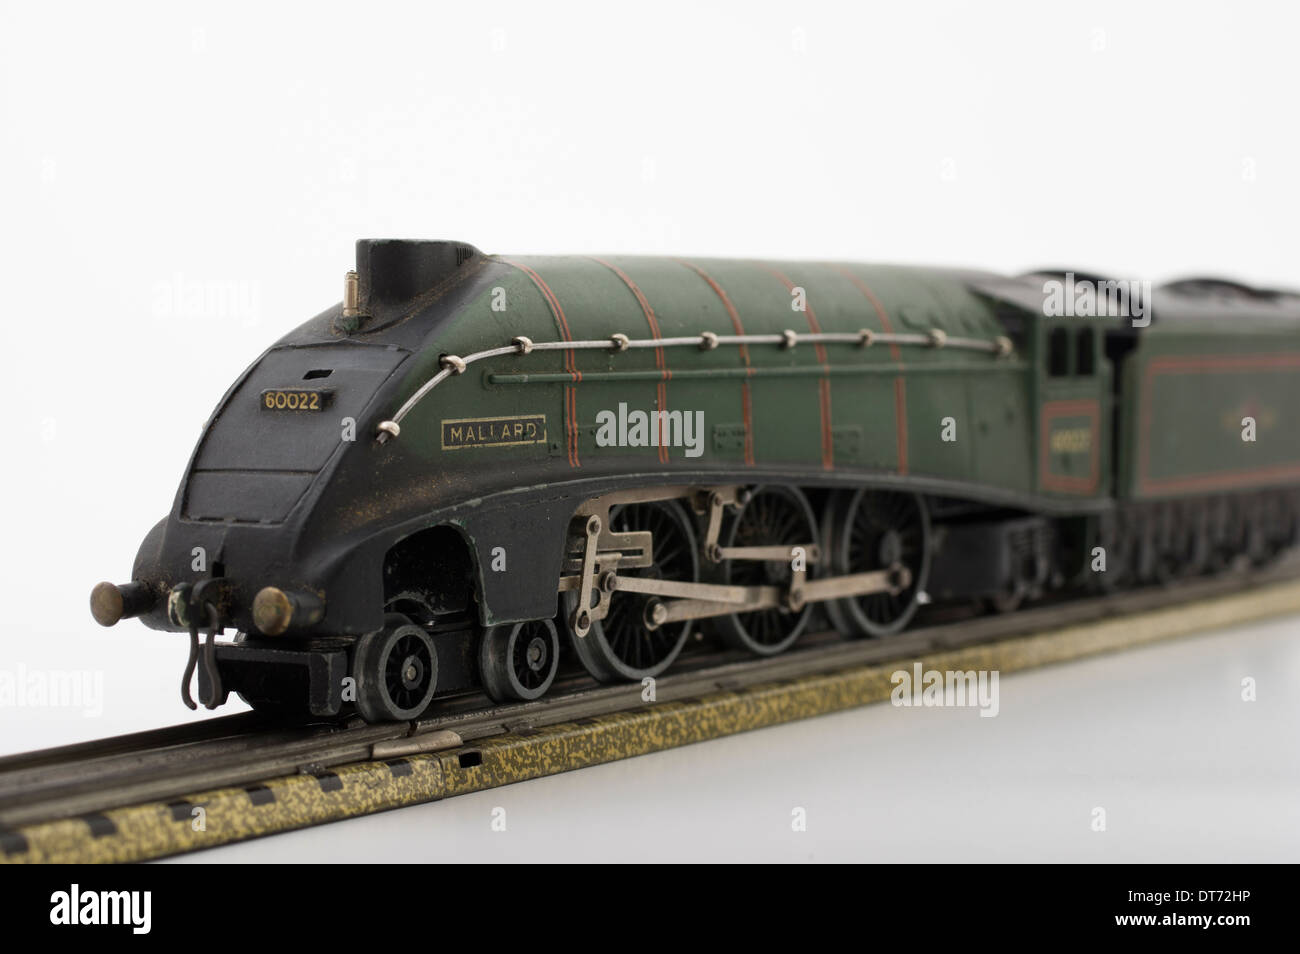 Modèle Dublo Hornby Train Locomotive Mallard vert classique Brtish jouet pour enfants Banque D'Images